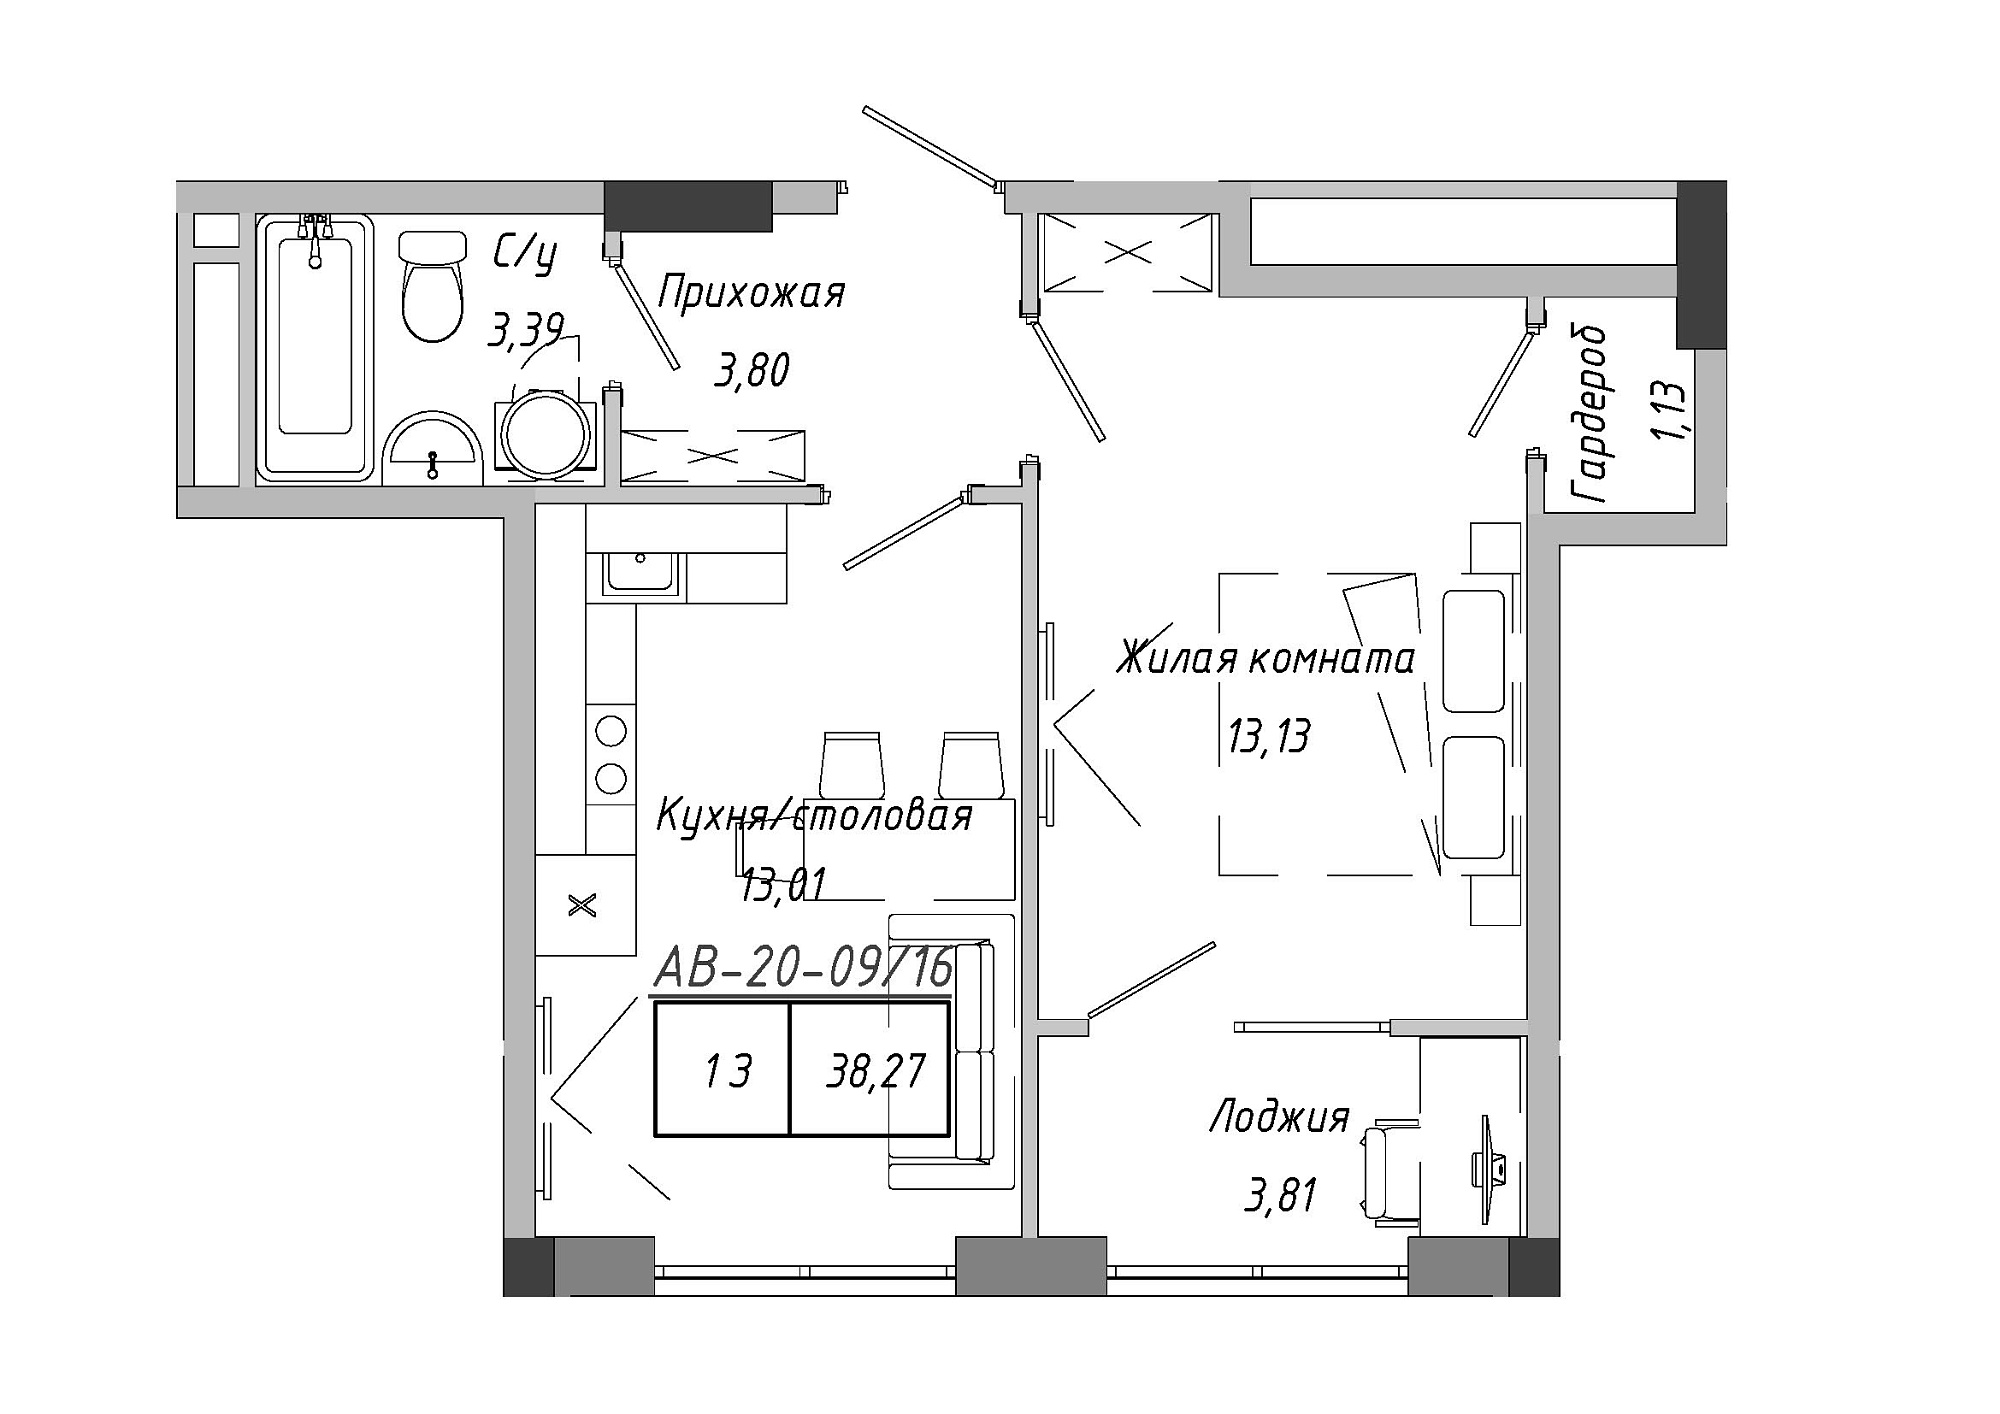 Планування 1-к квартира площею 38.79м2, AB-20-09/00016.